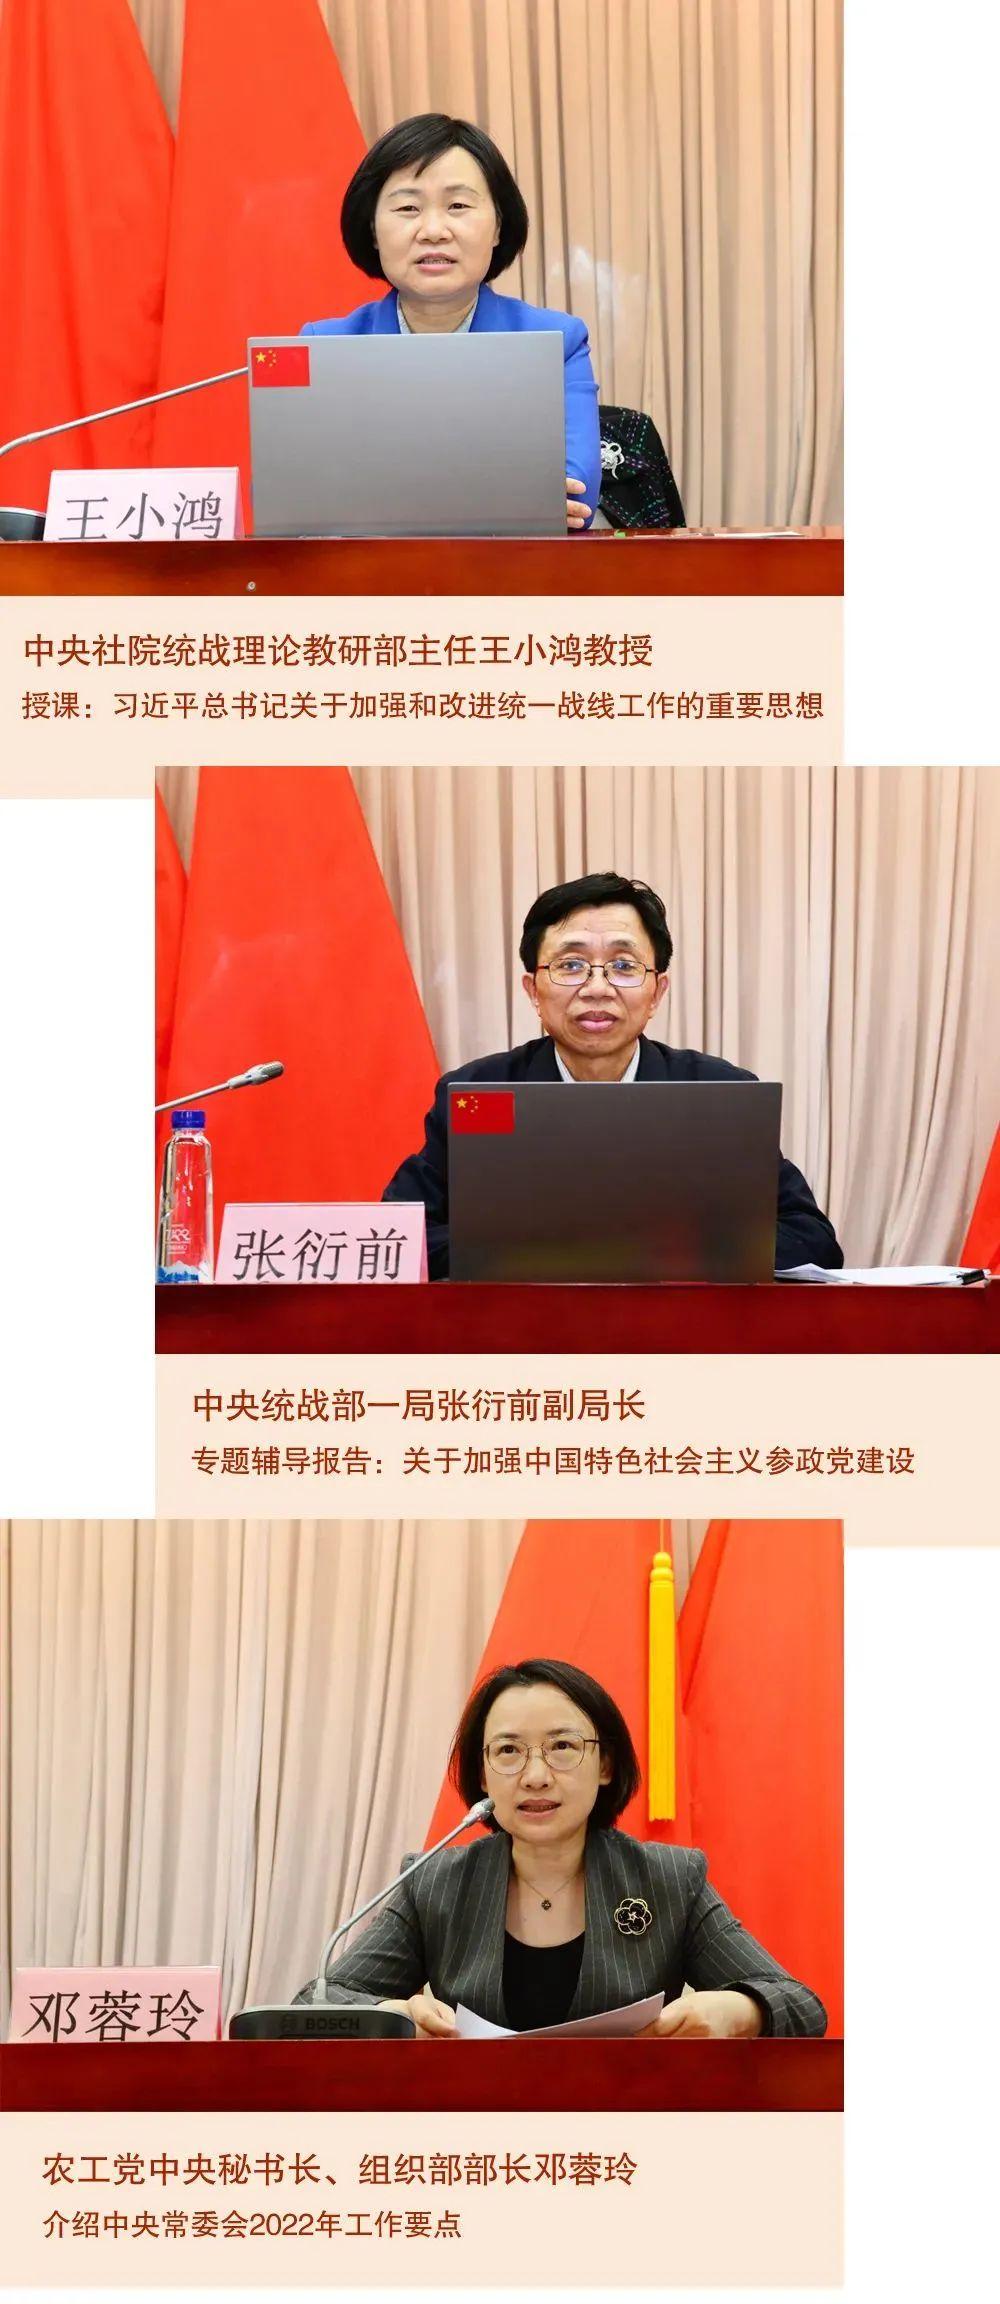 农工党淮安市委领导班子成员参加农工党中央培训班